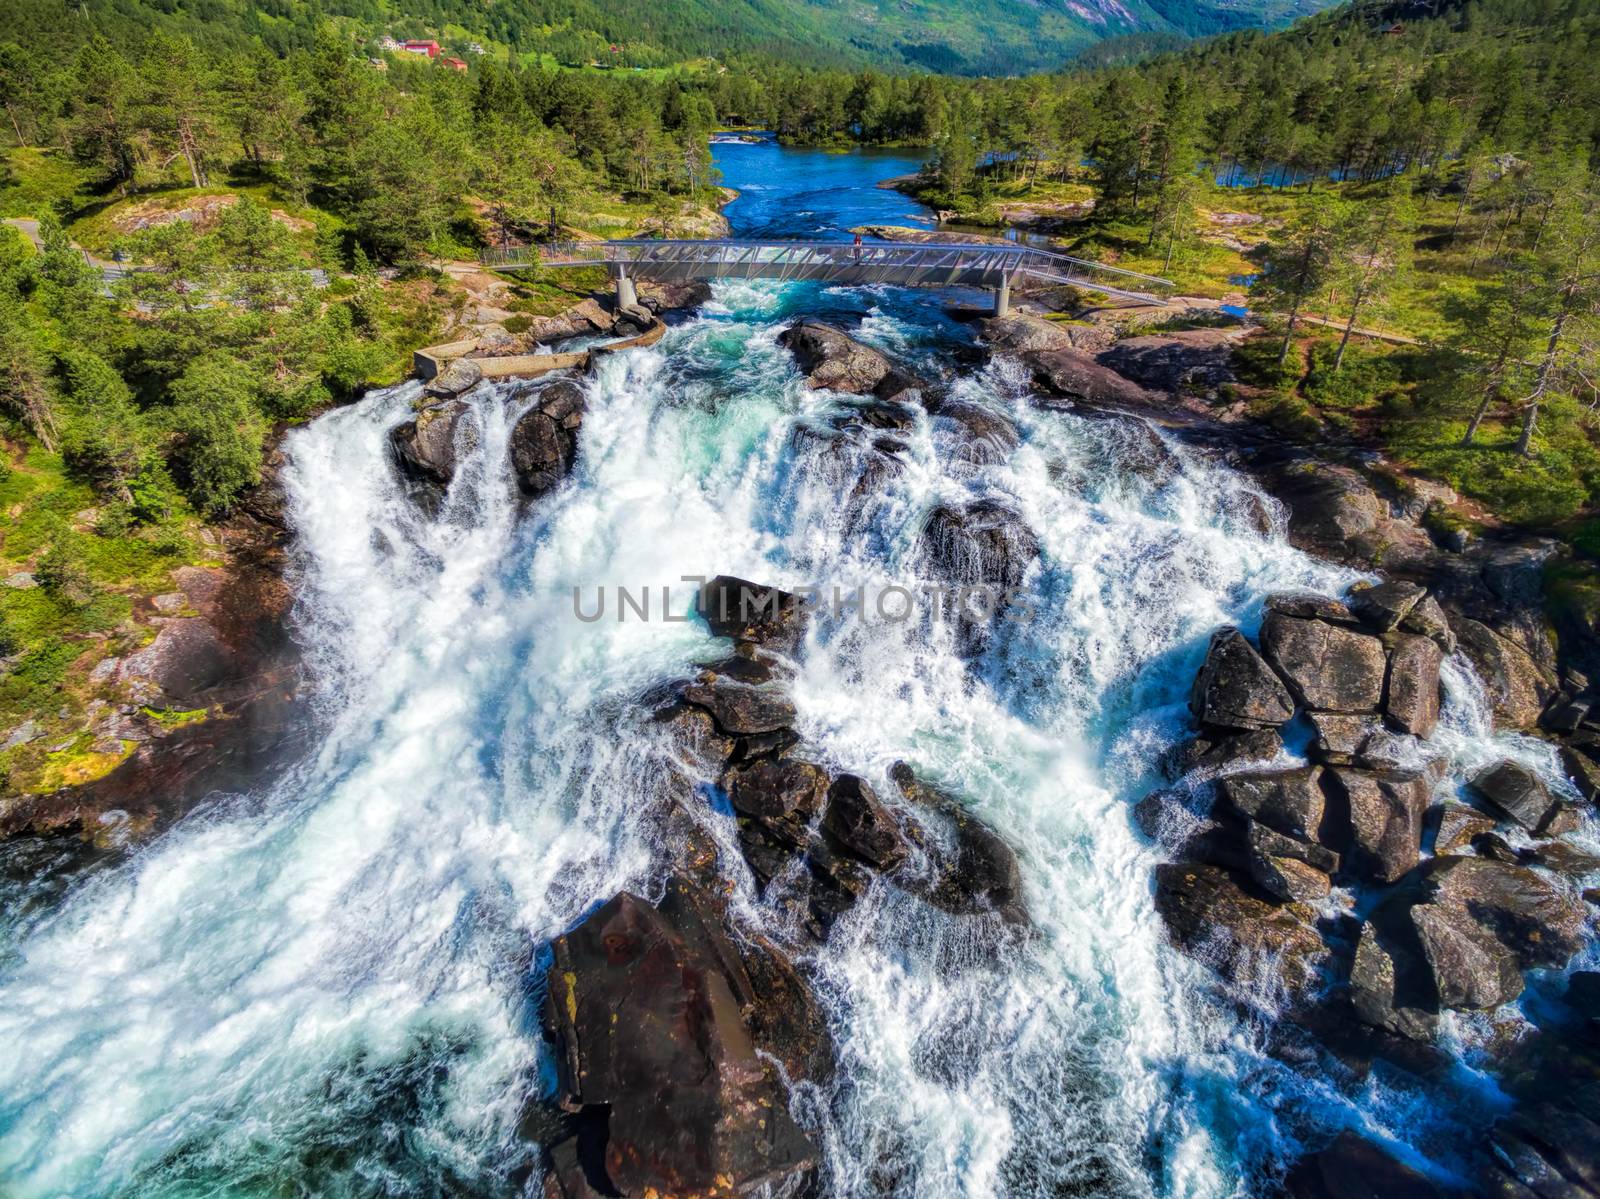 Likholefossen waterfall in Norway by Harvepino